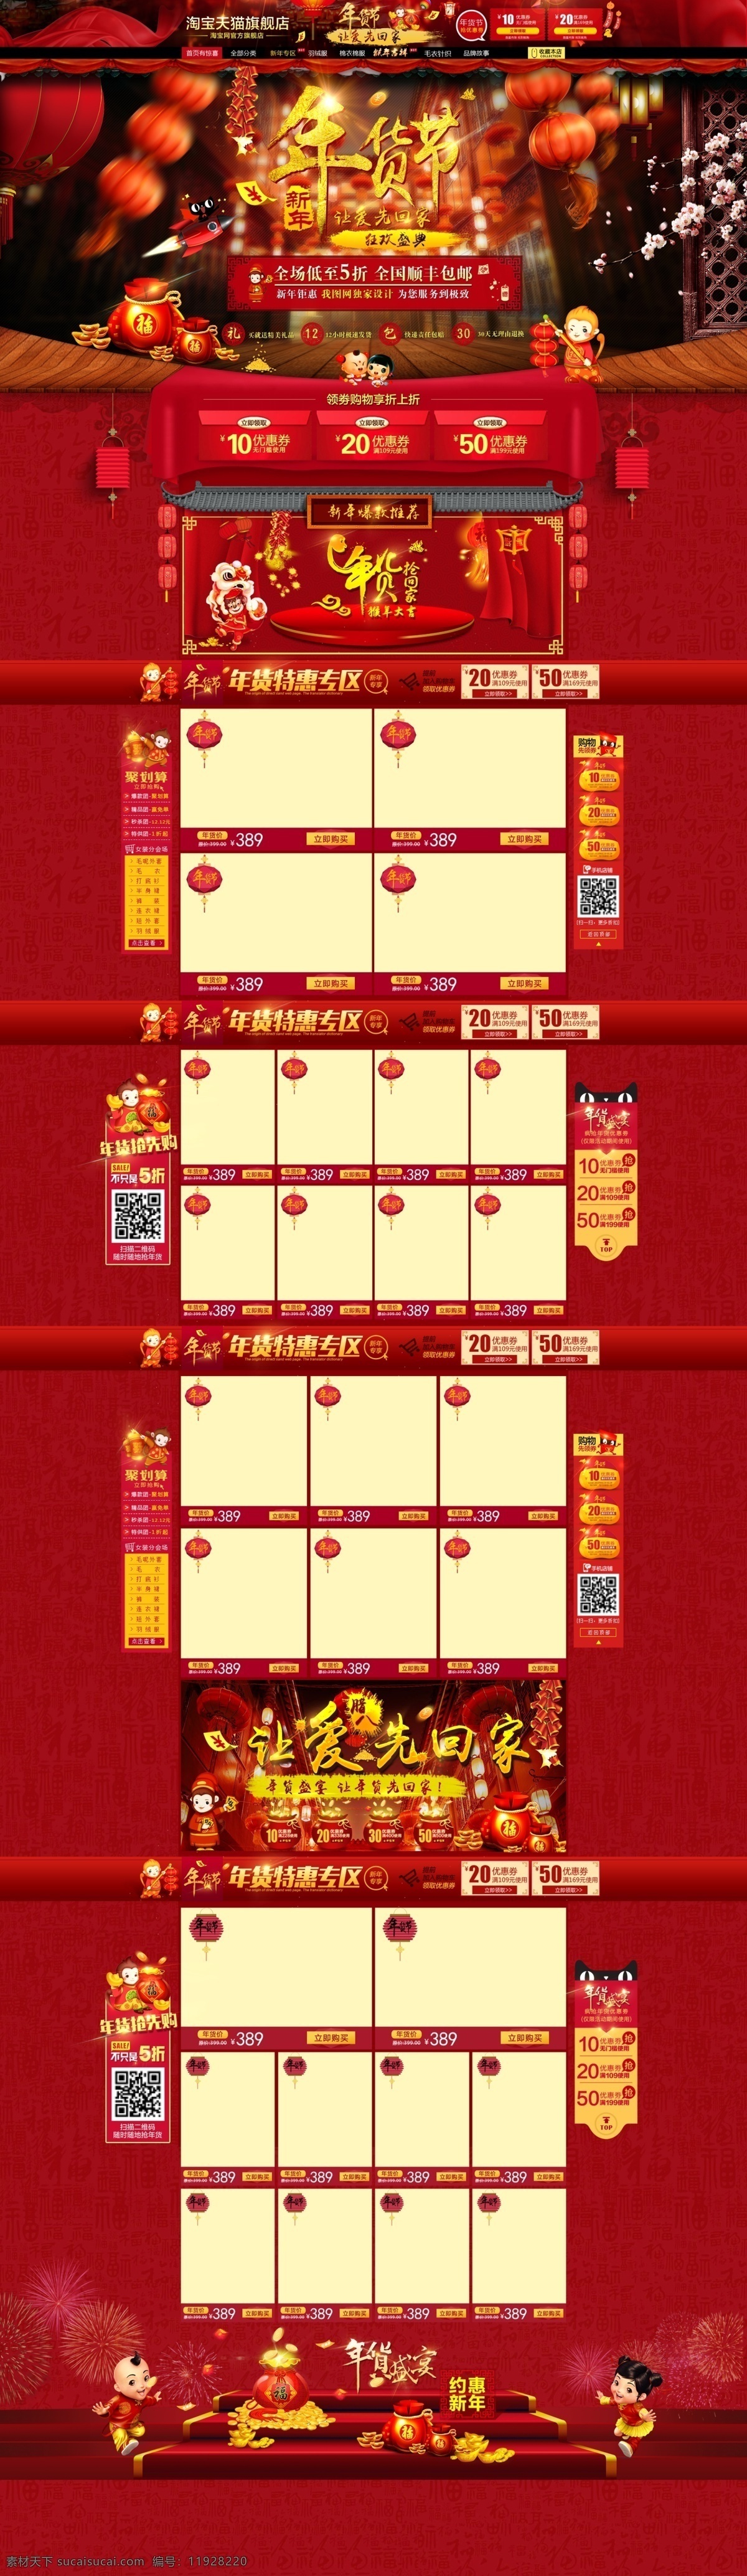 新年 首页 中国 风 psd源文件 国风 源文件 淘宝素材 淘宝设计 淘宝模板下载 红色